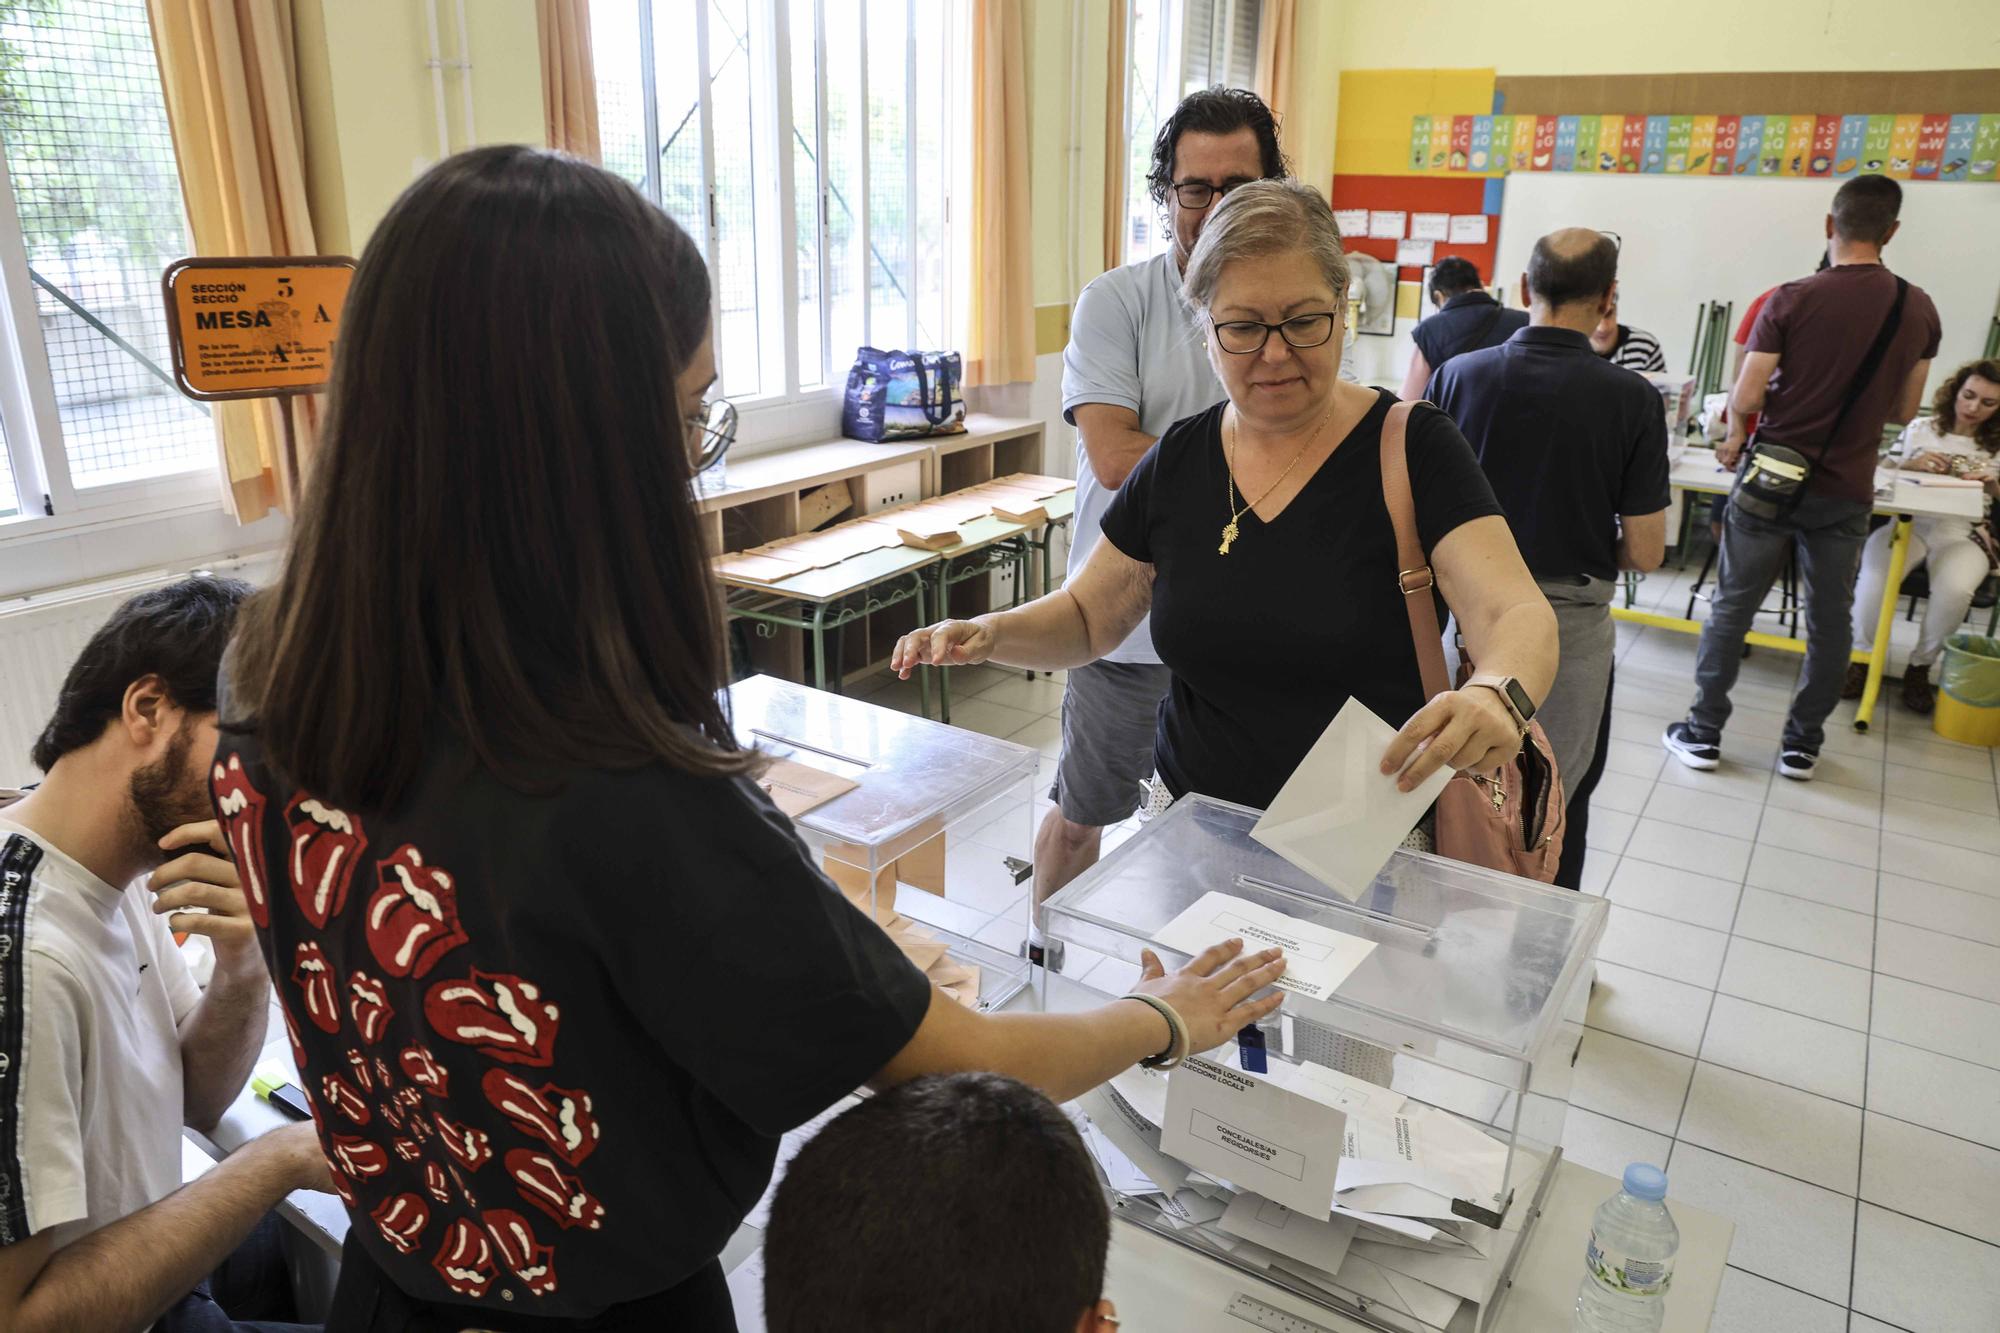 La jornada electoral del 28M en Alicante